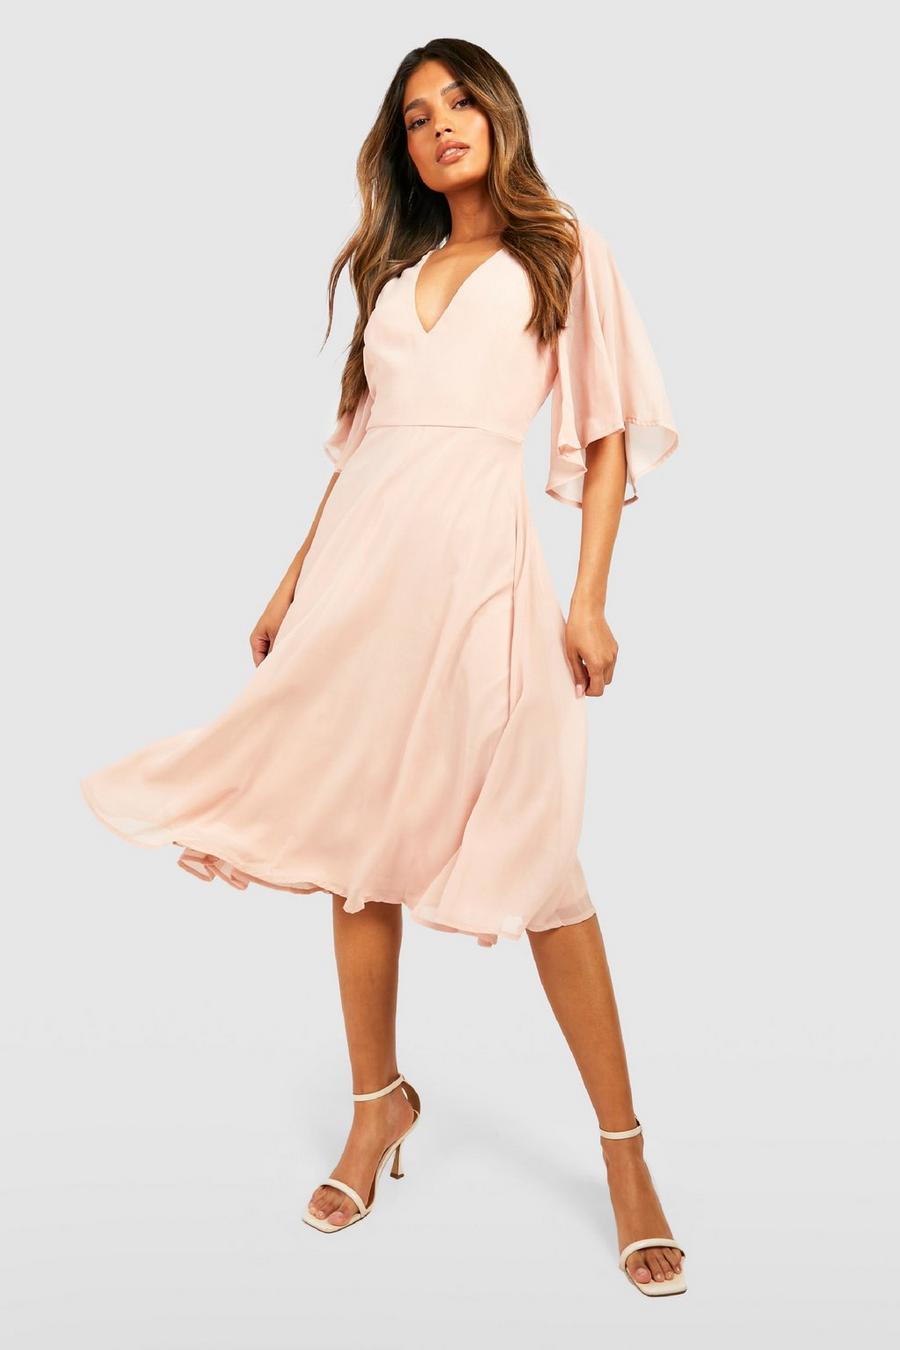 סמוק pink שמלת מידי סקייטר מבד שיפון לשושבינה עם שרוולי מלאך